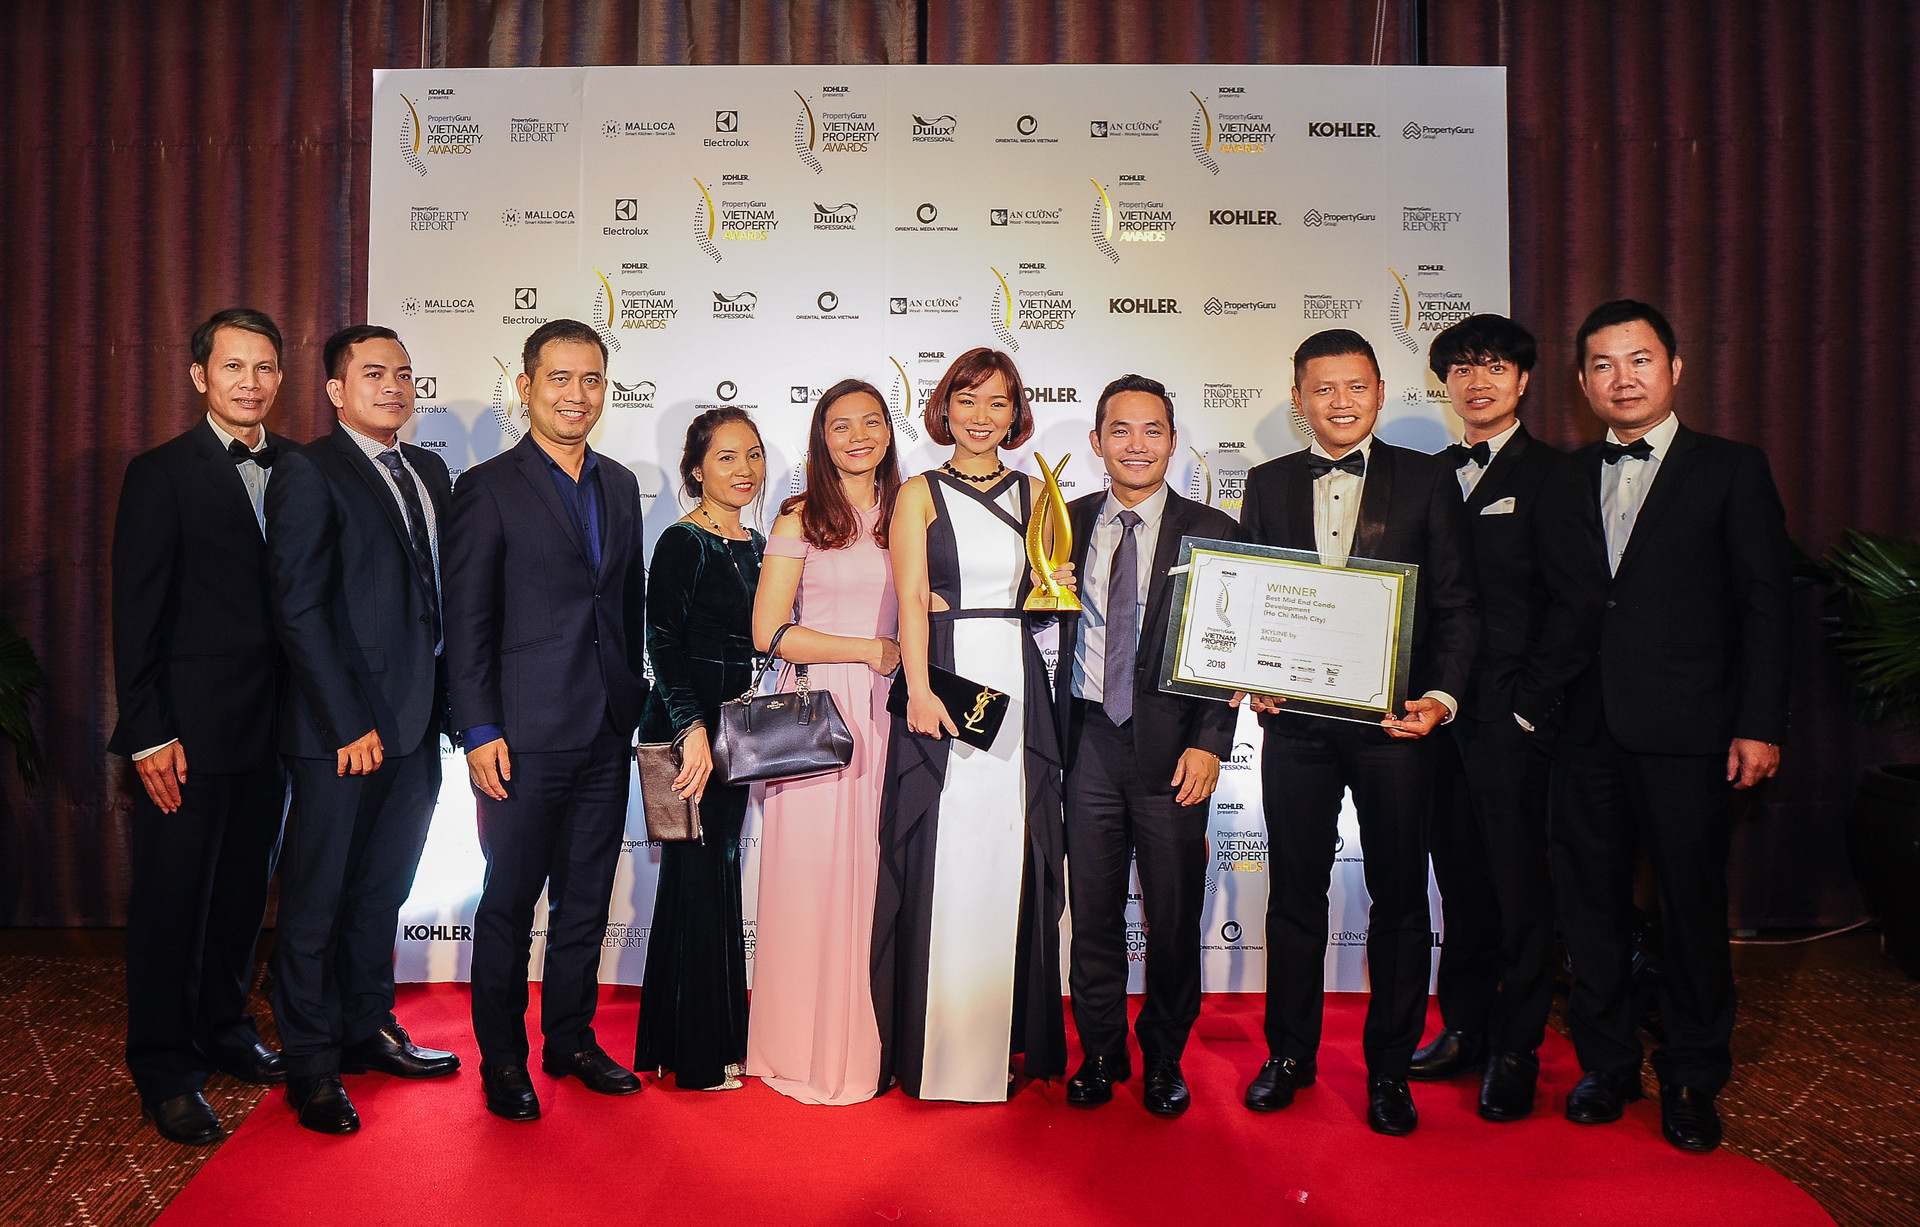 An Gia nhận giải thưởng danh giá “Propertyguru Viet Nam Property Awards”